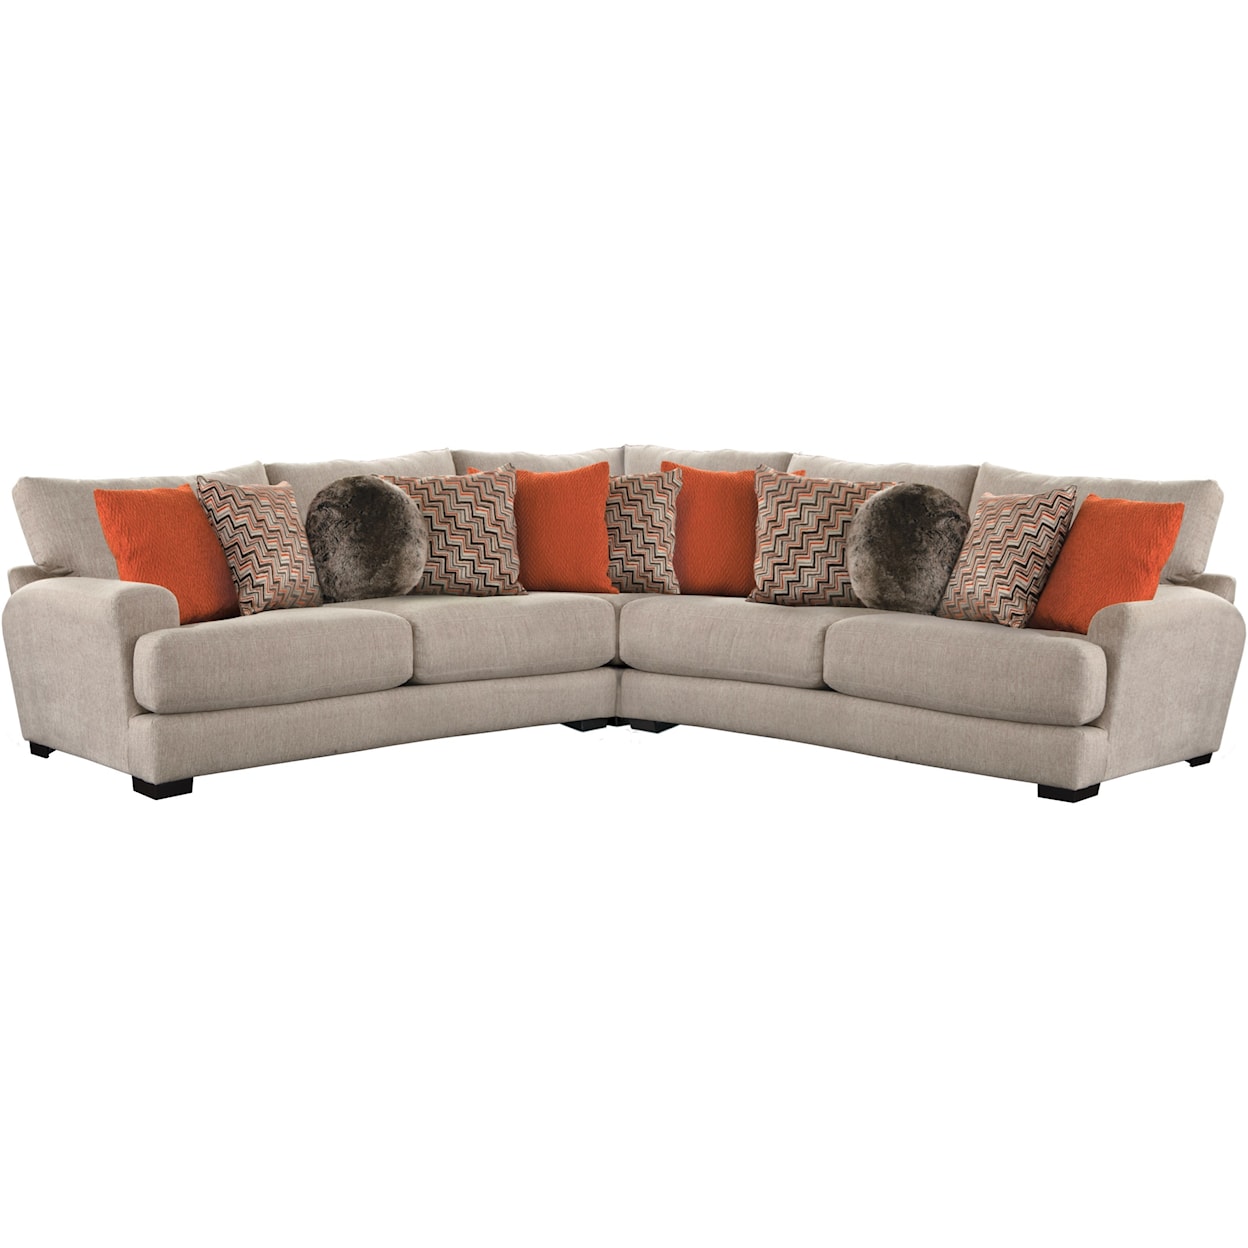 Carolina Furniture 4498 Ava Sectional Sofa with 4 Seats